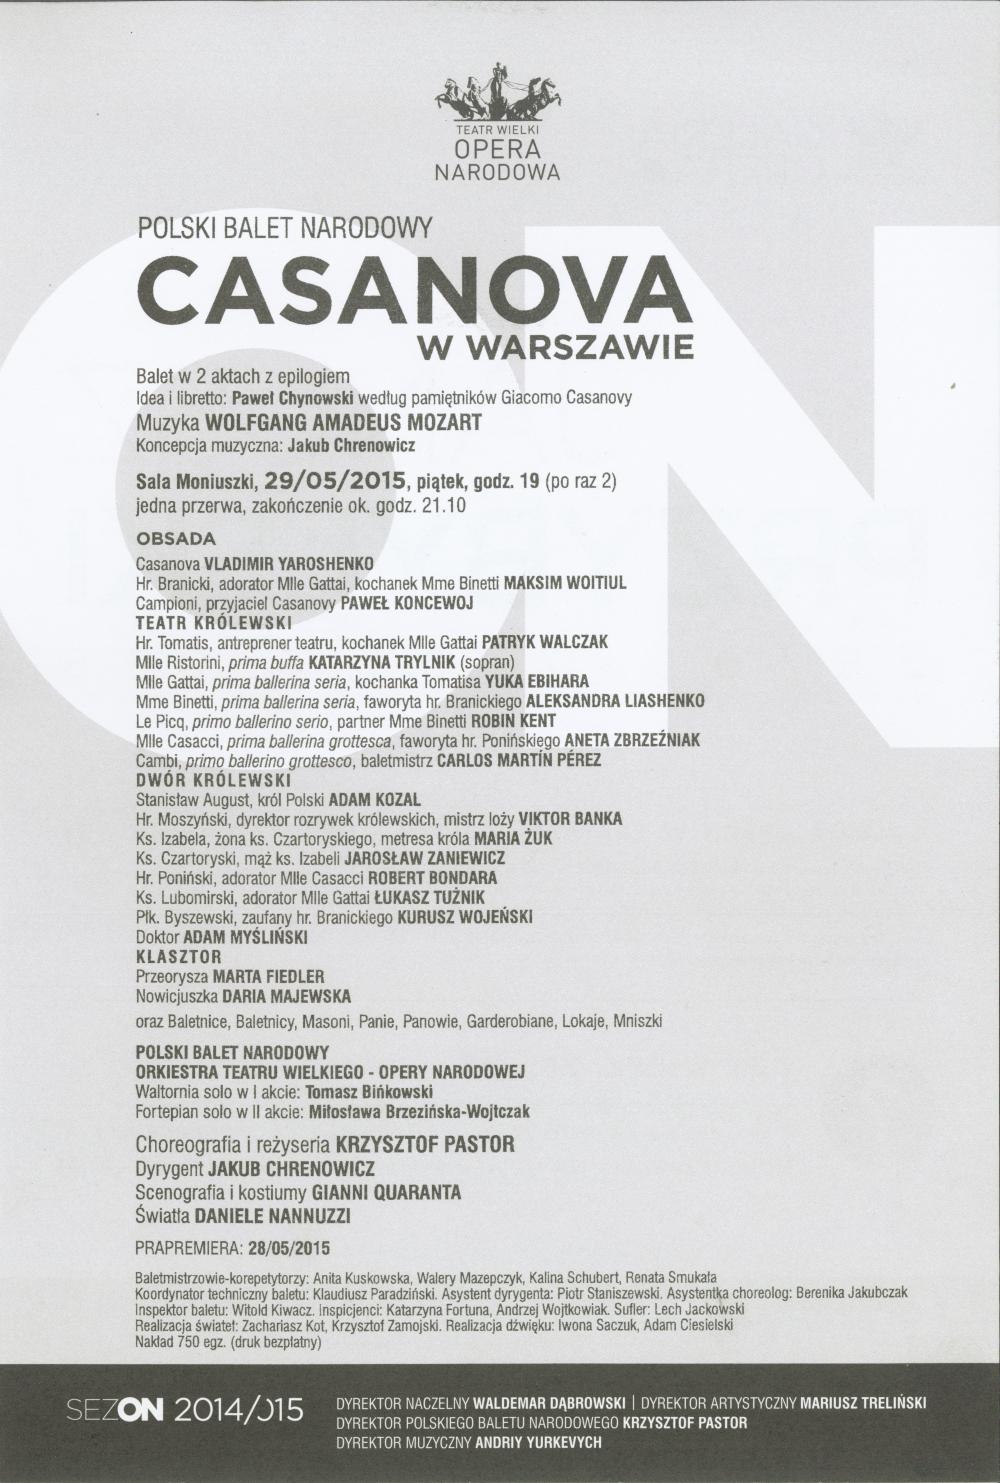 Wkładka obsadowa "Casanova w Warszawie" Krzysztofa Pastora muzyka Wolfgang Amadeus Mozart 2015-05-29